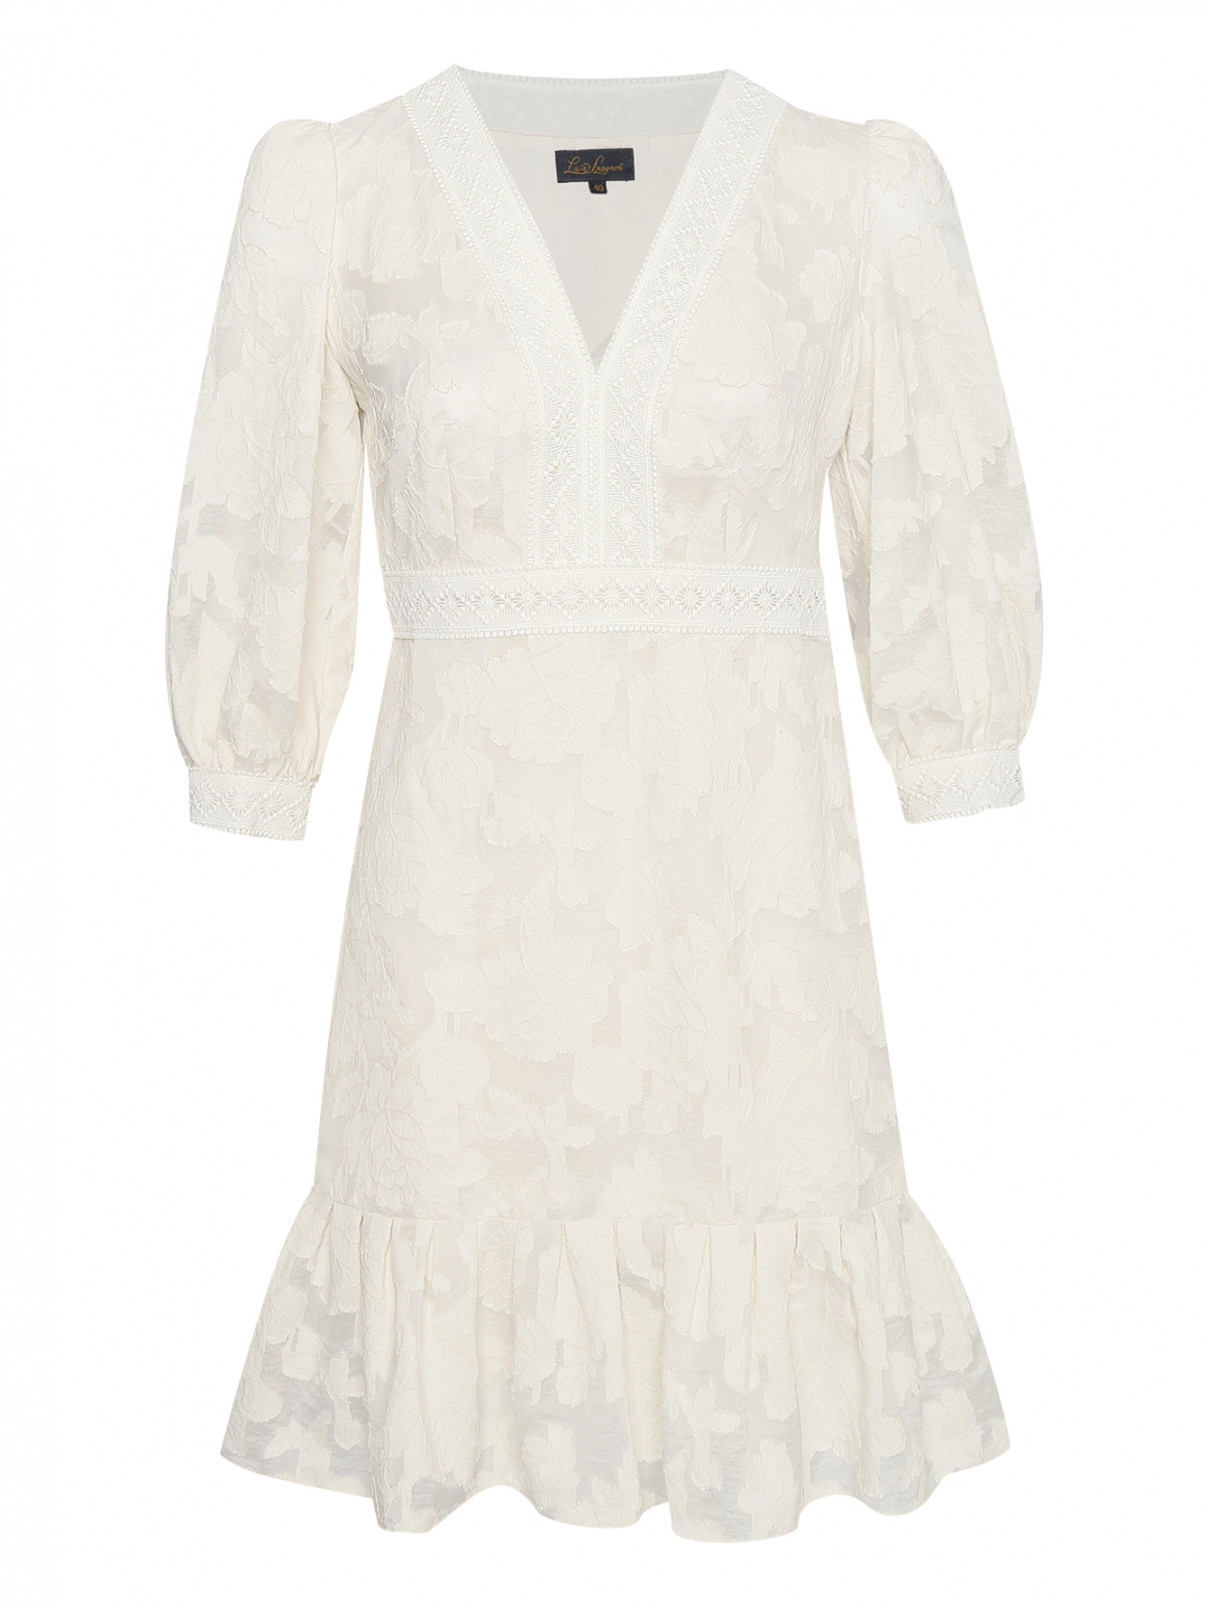 Платье-мини с рукавами 3/4 Luisa Spagnoli  –  Общий вид  – Цвет:  Белый